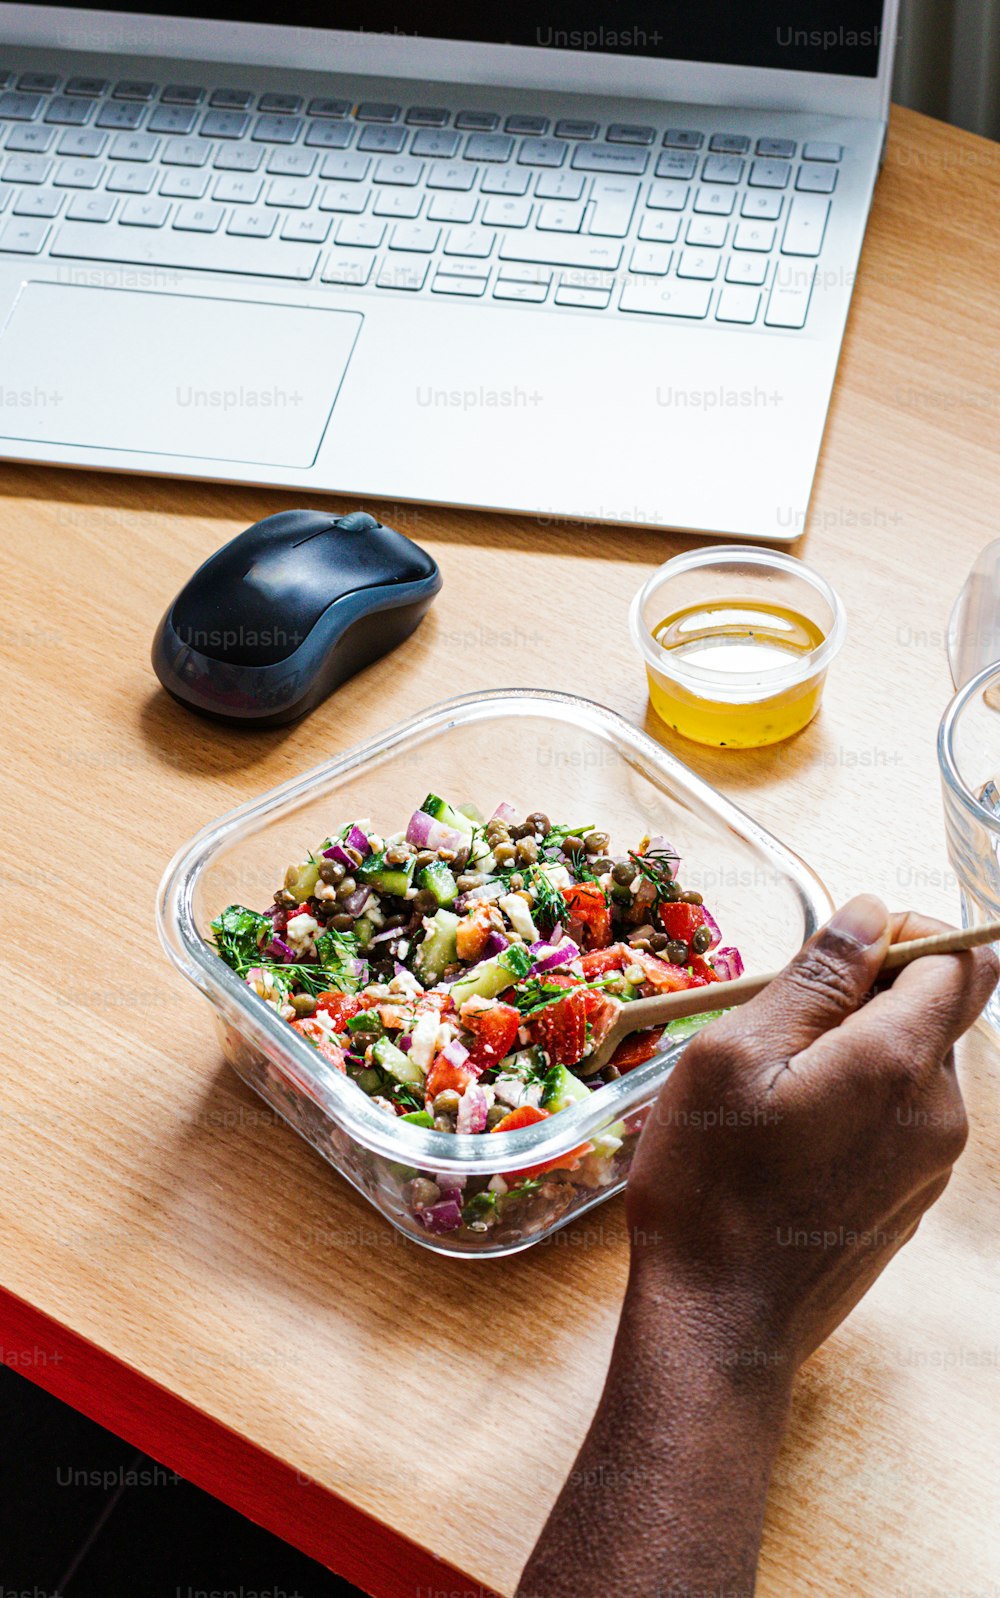 uma pessoa está comendo uma salada na frente de um laptop